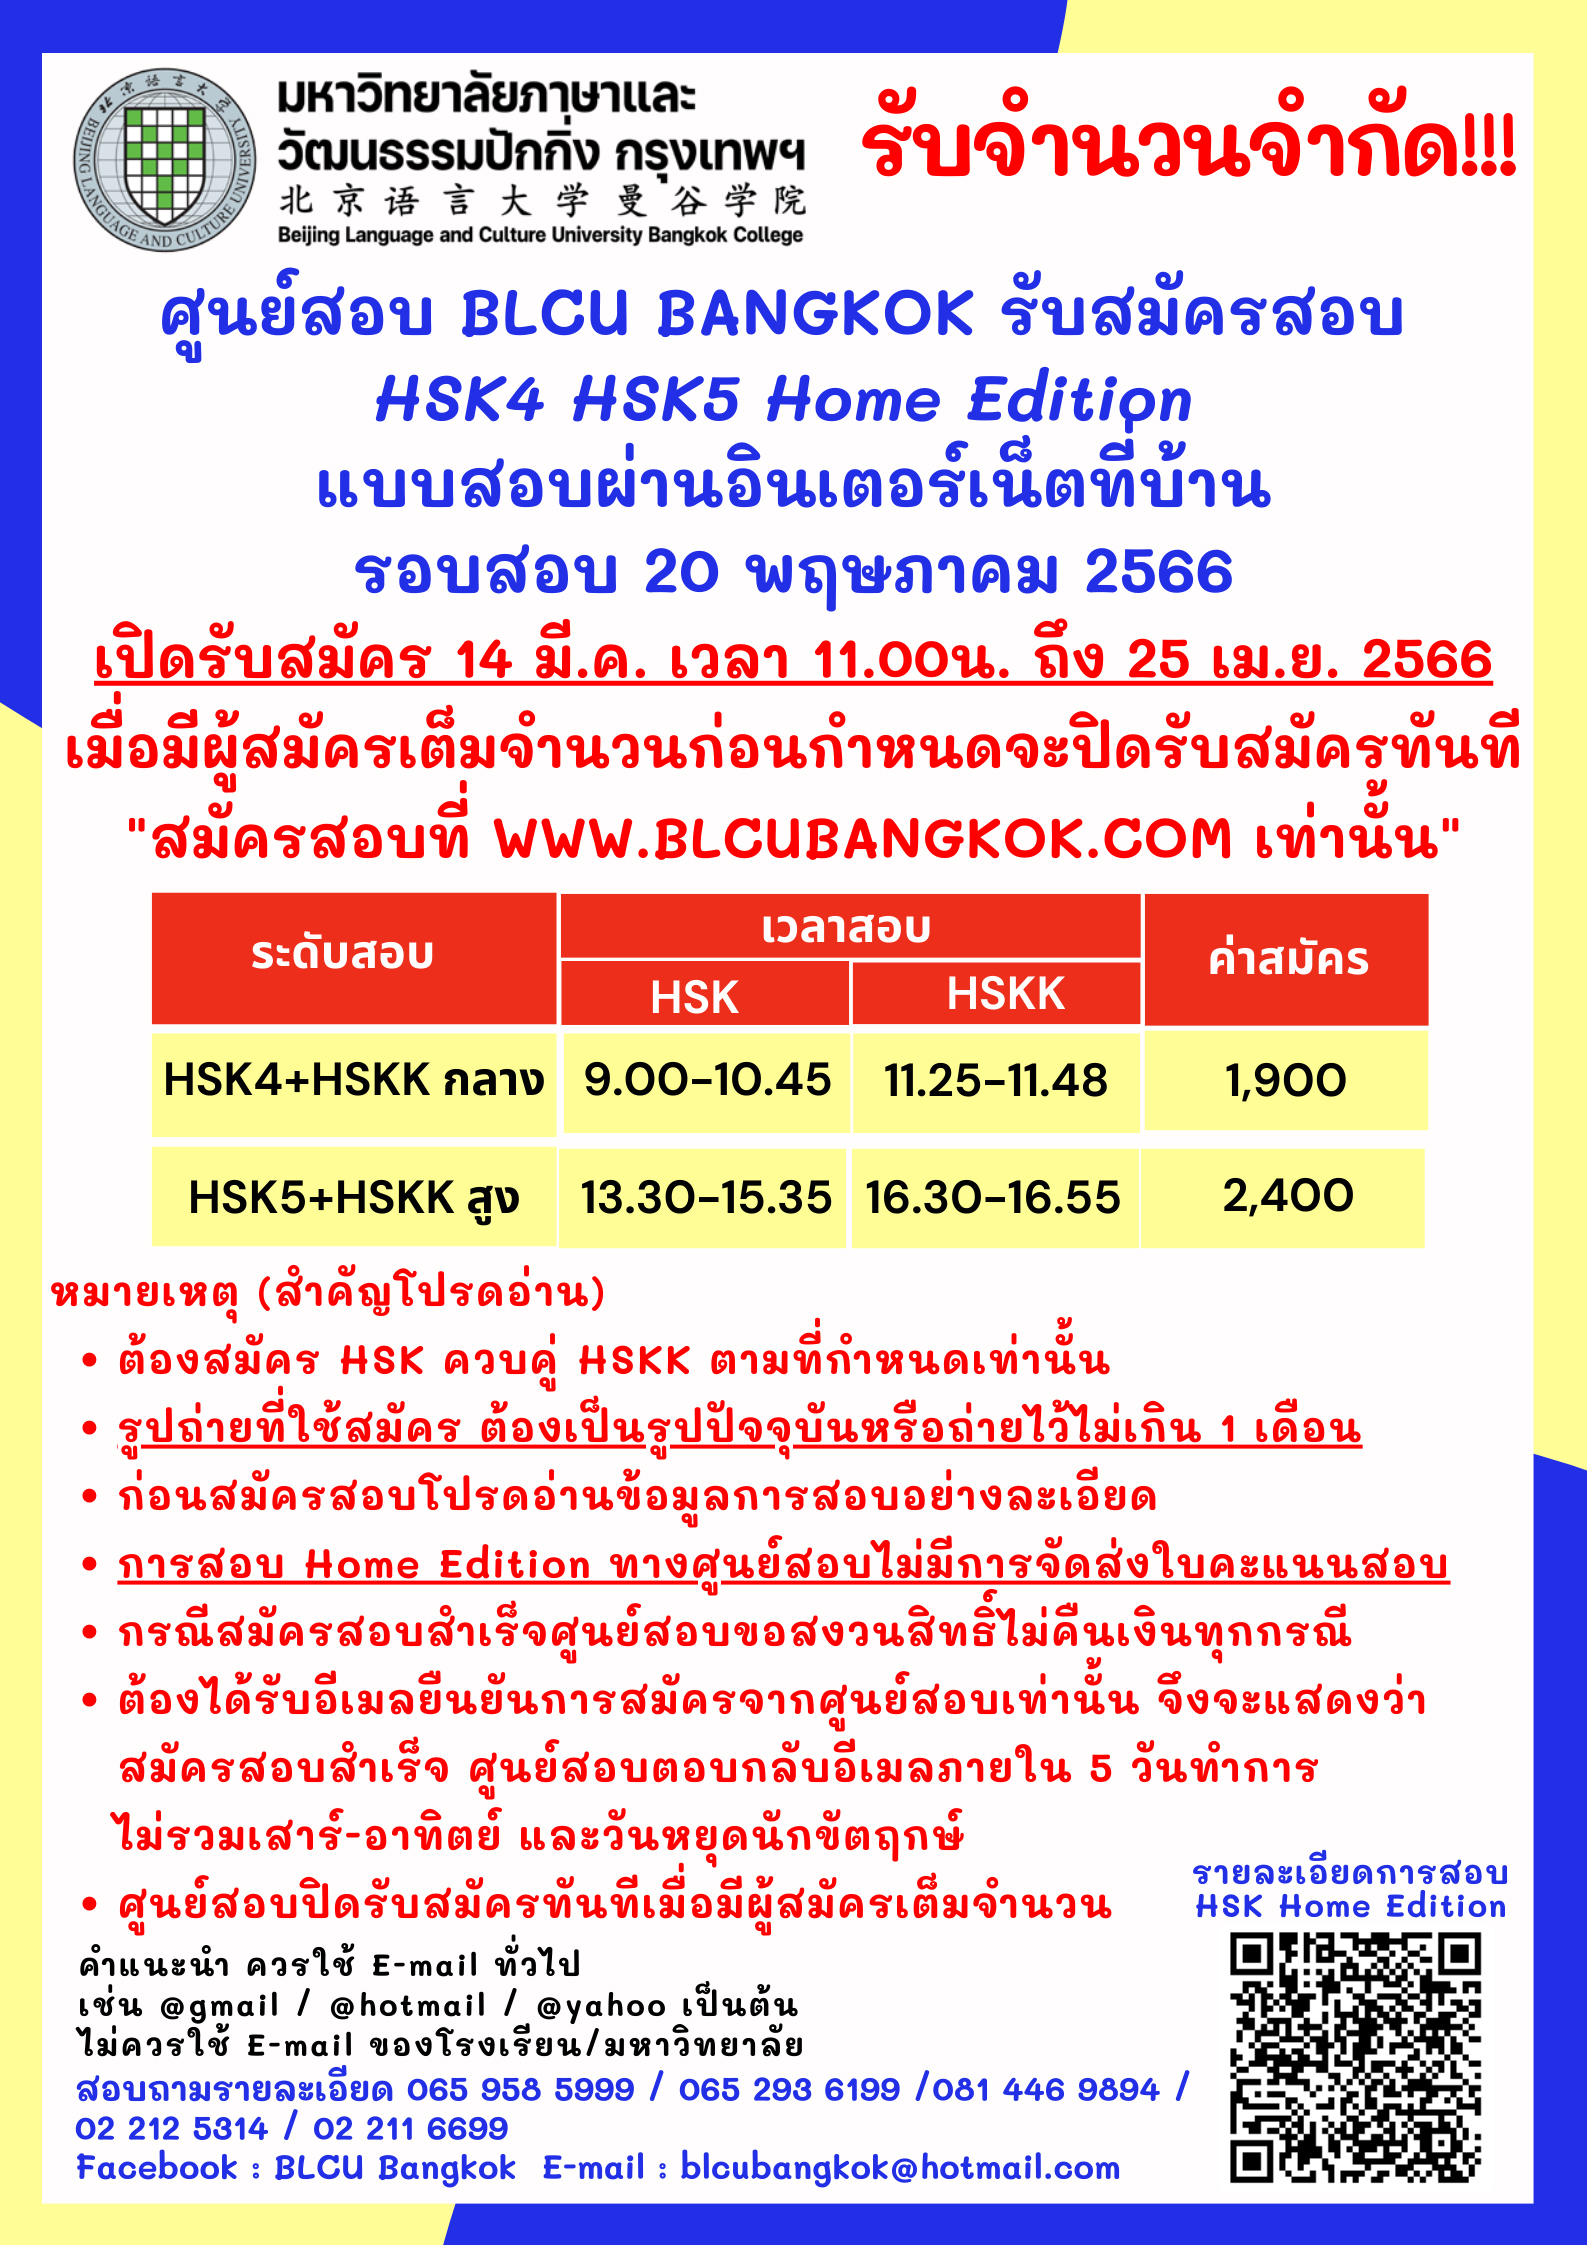 การสอบ HSK Online ที่บ้าน (Home Edition)